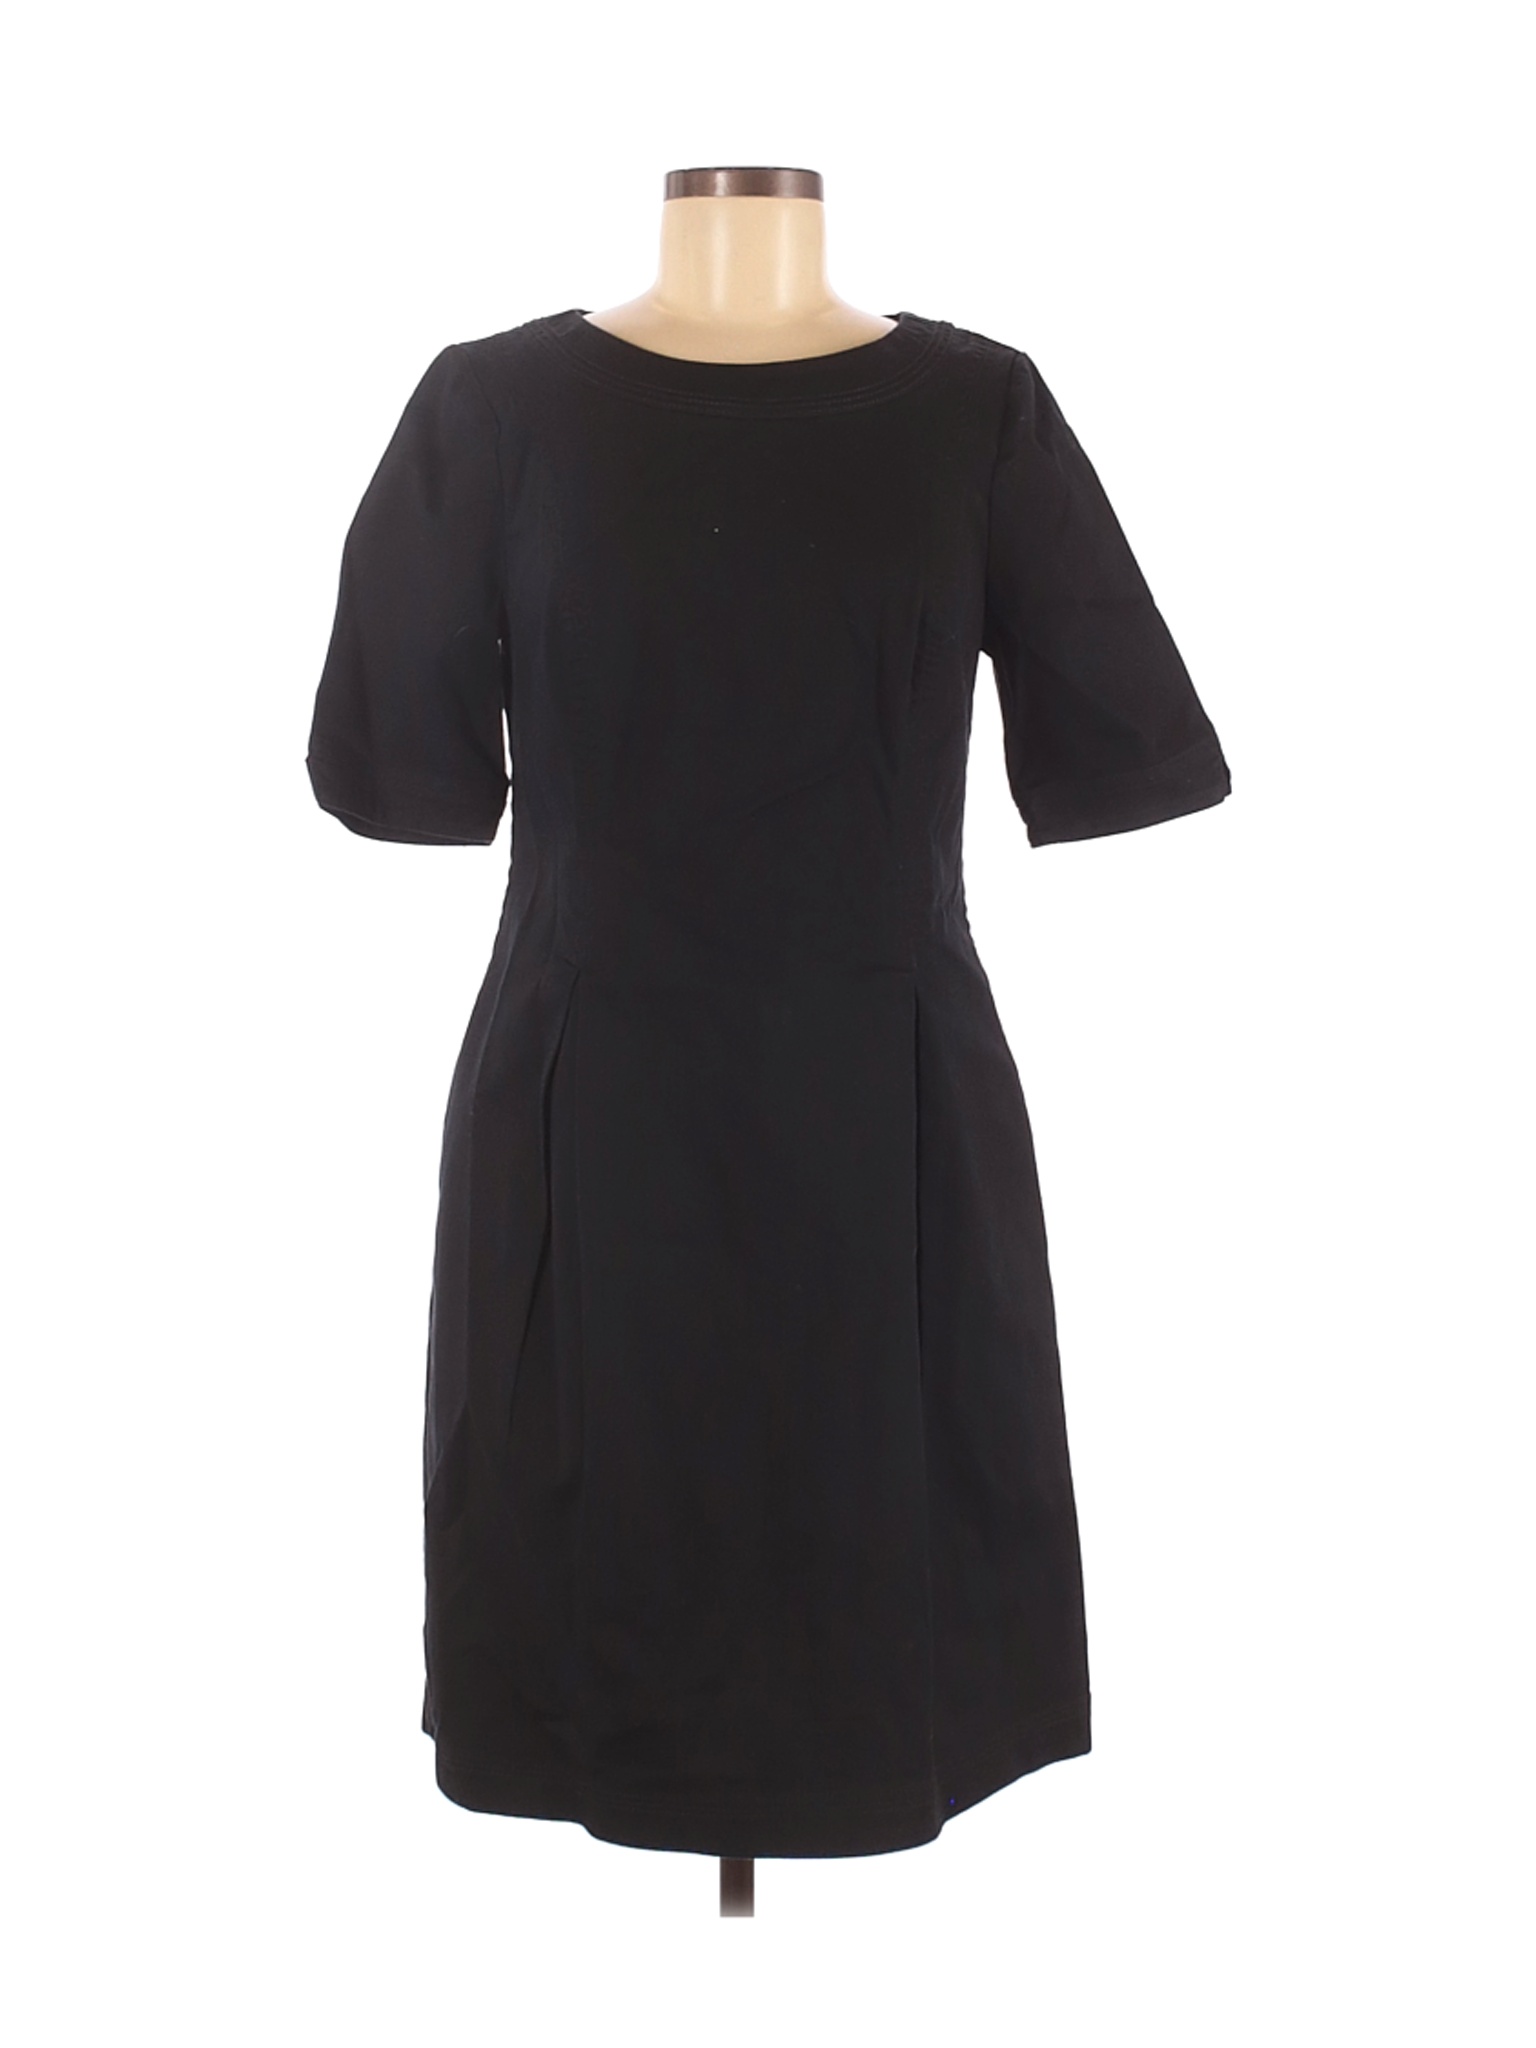 Boden Women Black Casual Dress 8 | eBay